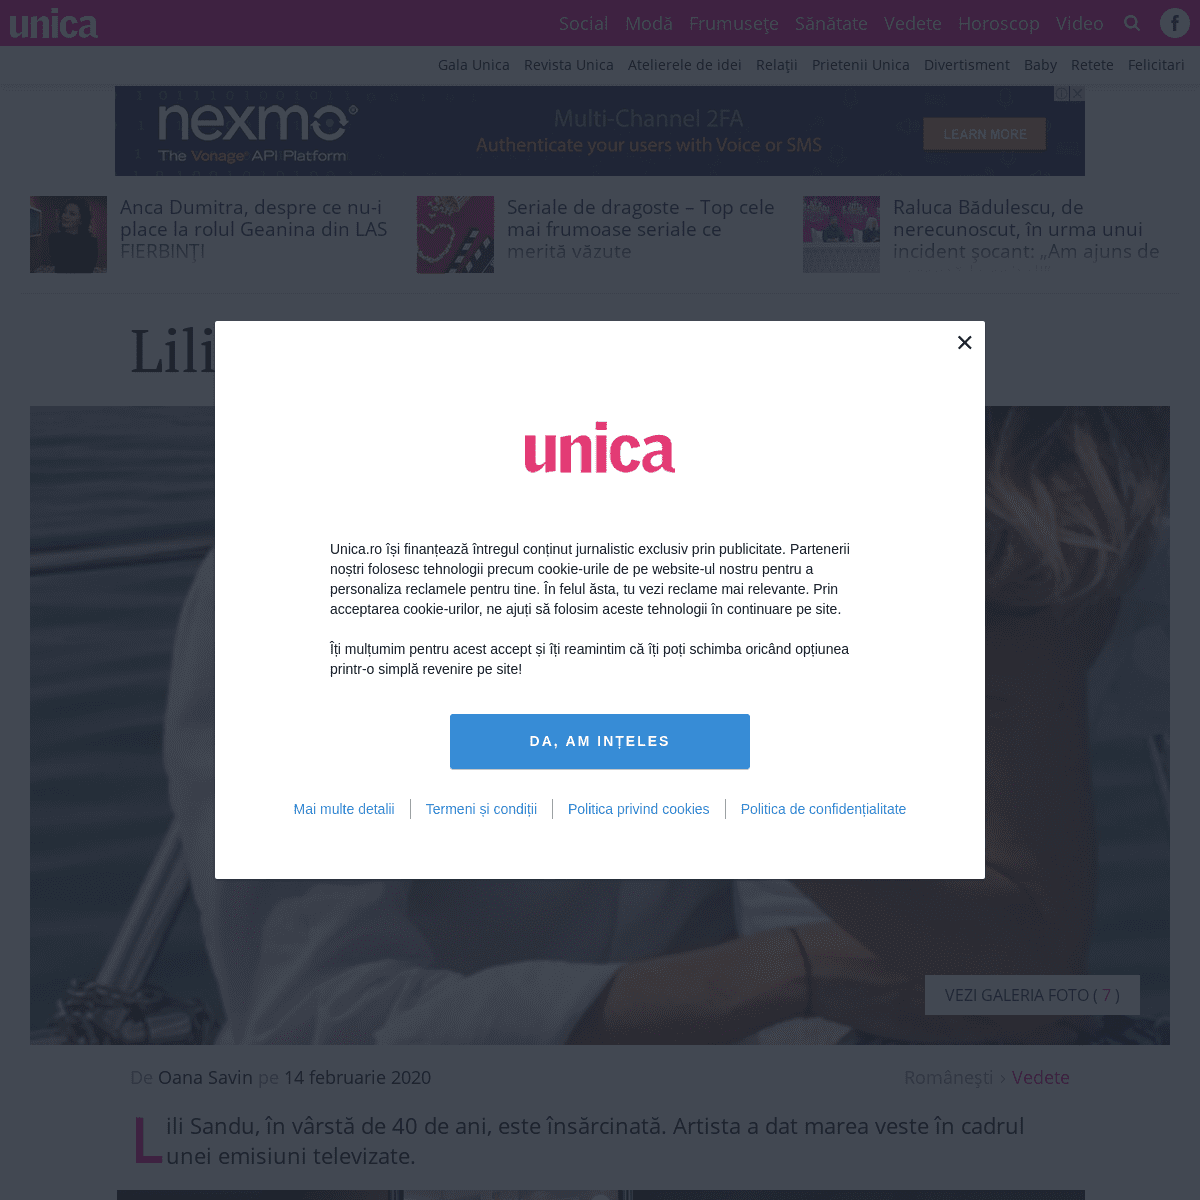 A complete backup of www.unica.ro/vedete/lili-sandu-este-insarcinata-303944